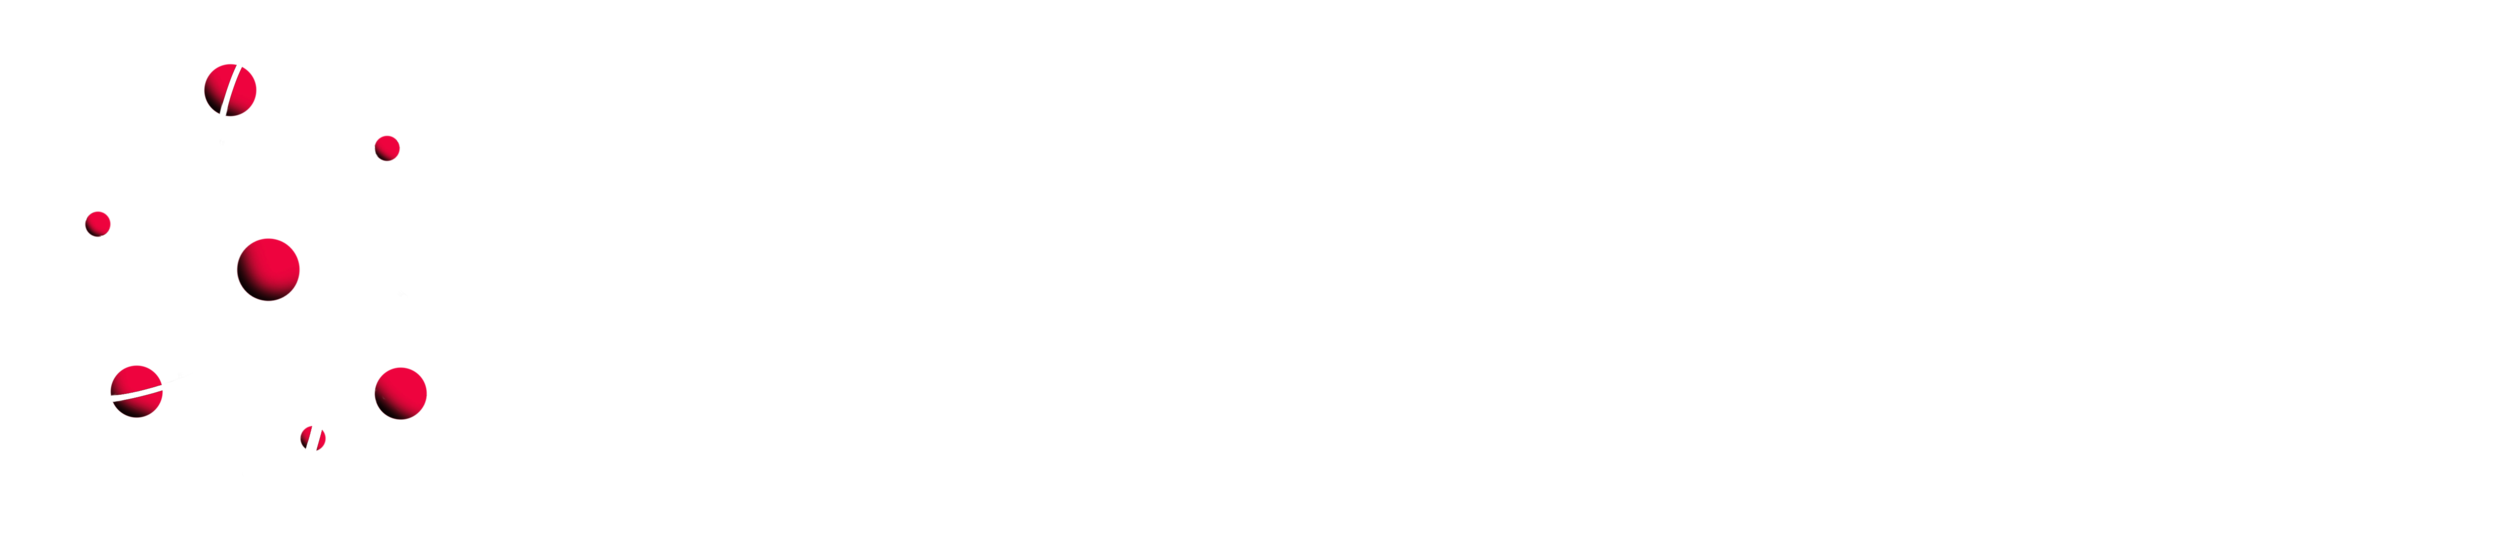 Atom Moore